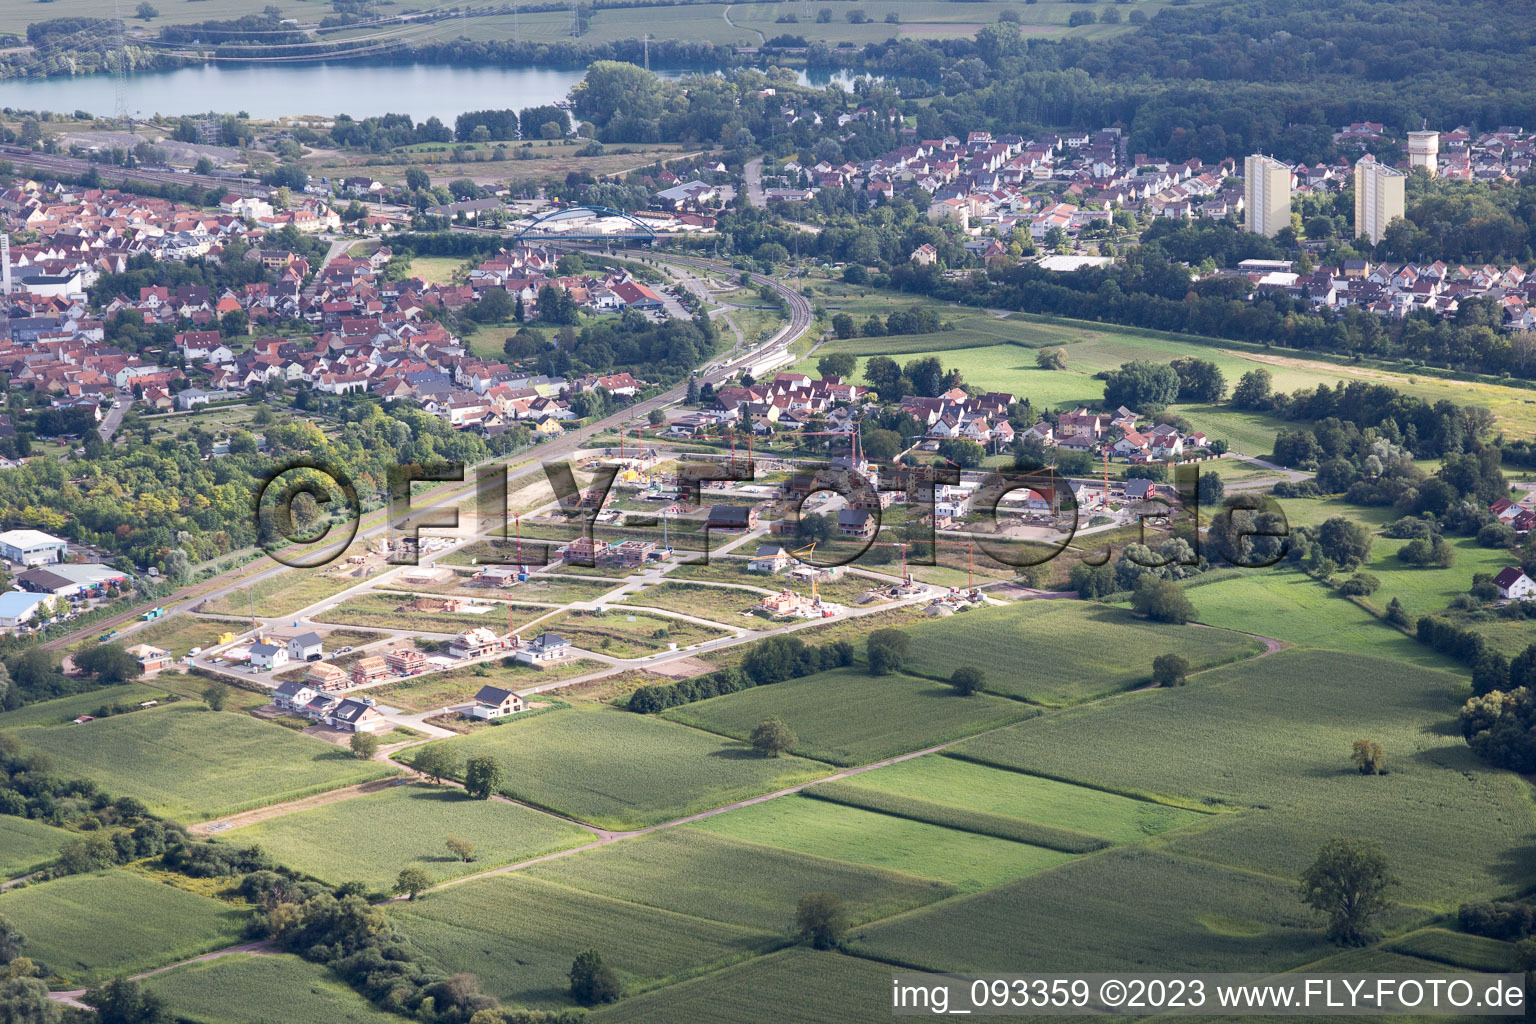 Luftbild von Wörth am Rhein, Neubaugebiet im Bundesland Rheinland-Pfalz, Deutschland